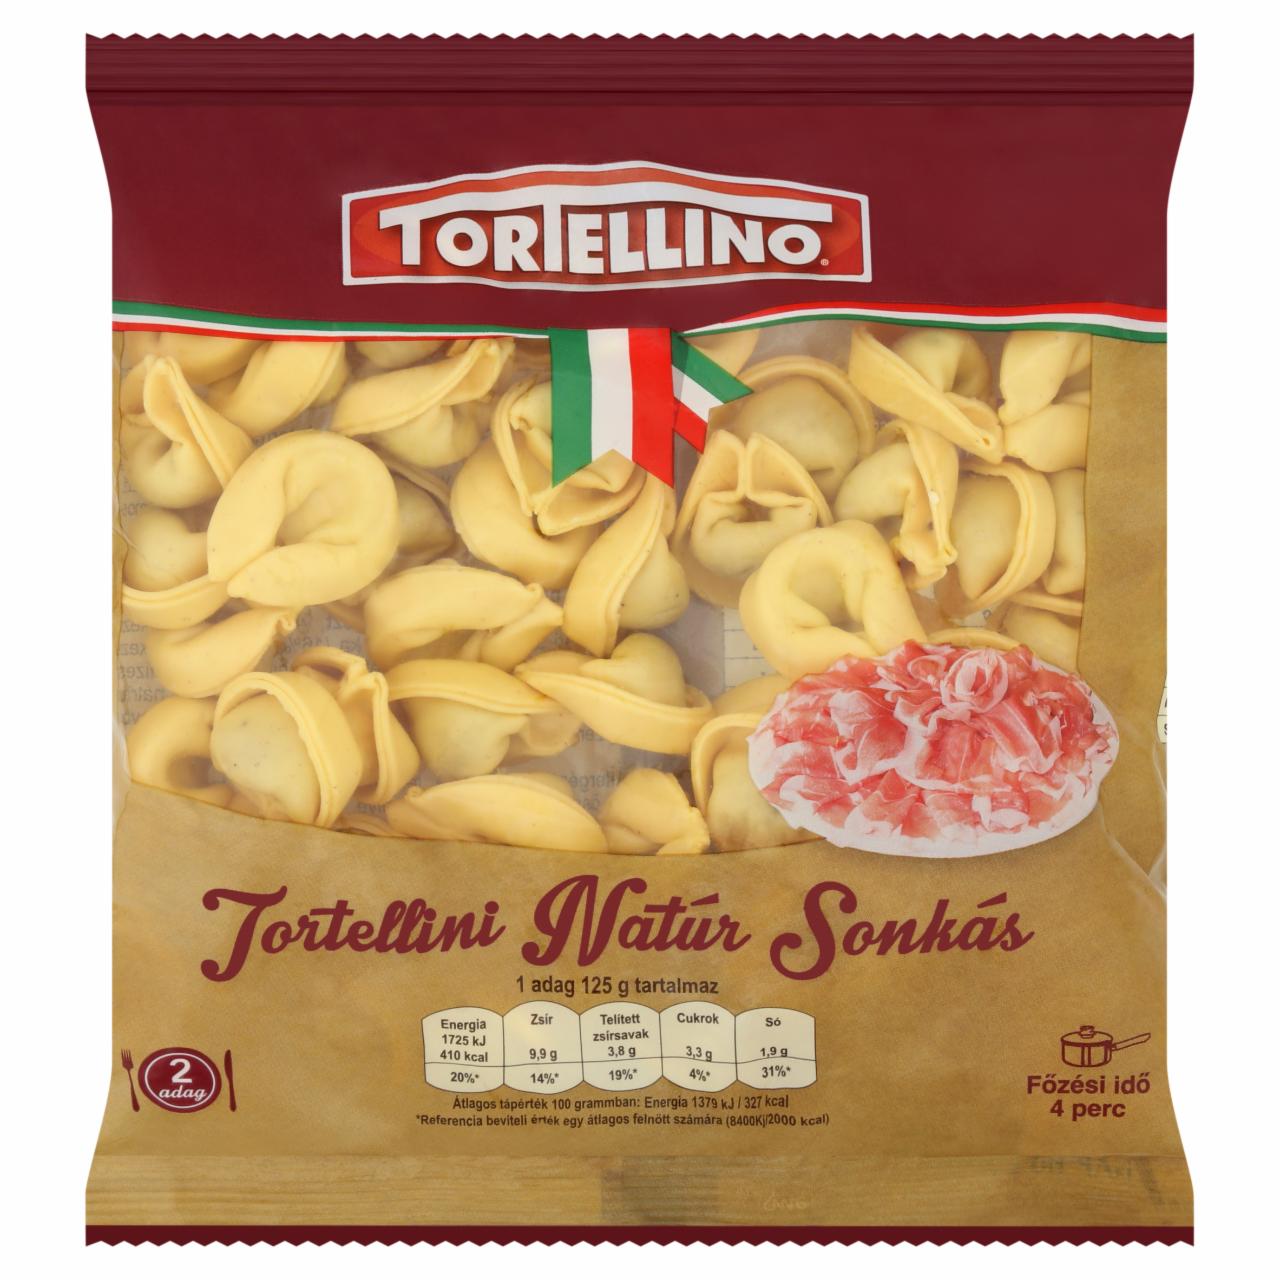 Képek - Tortellino Tortellini natúr sonkás friss tészta 250 g